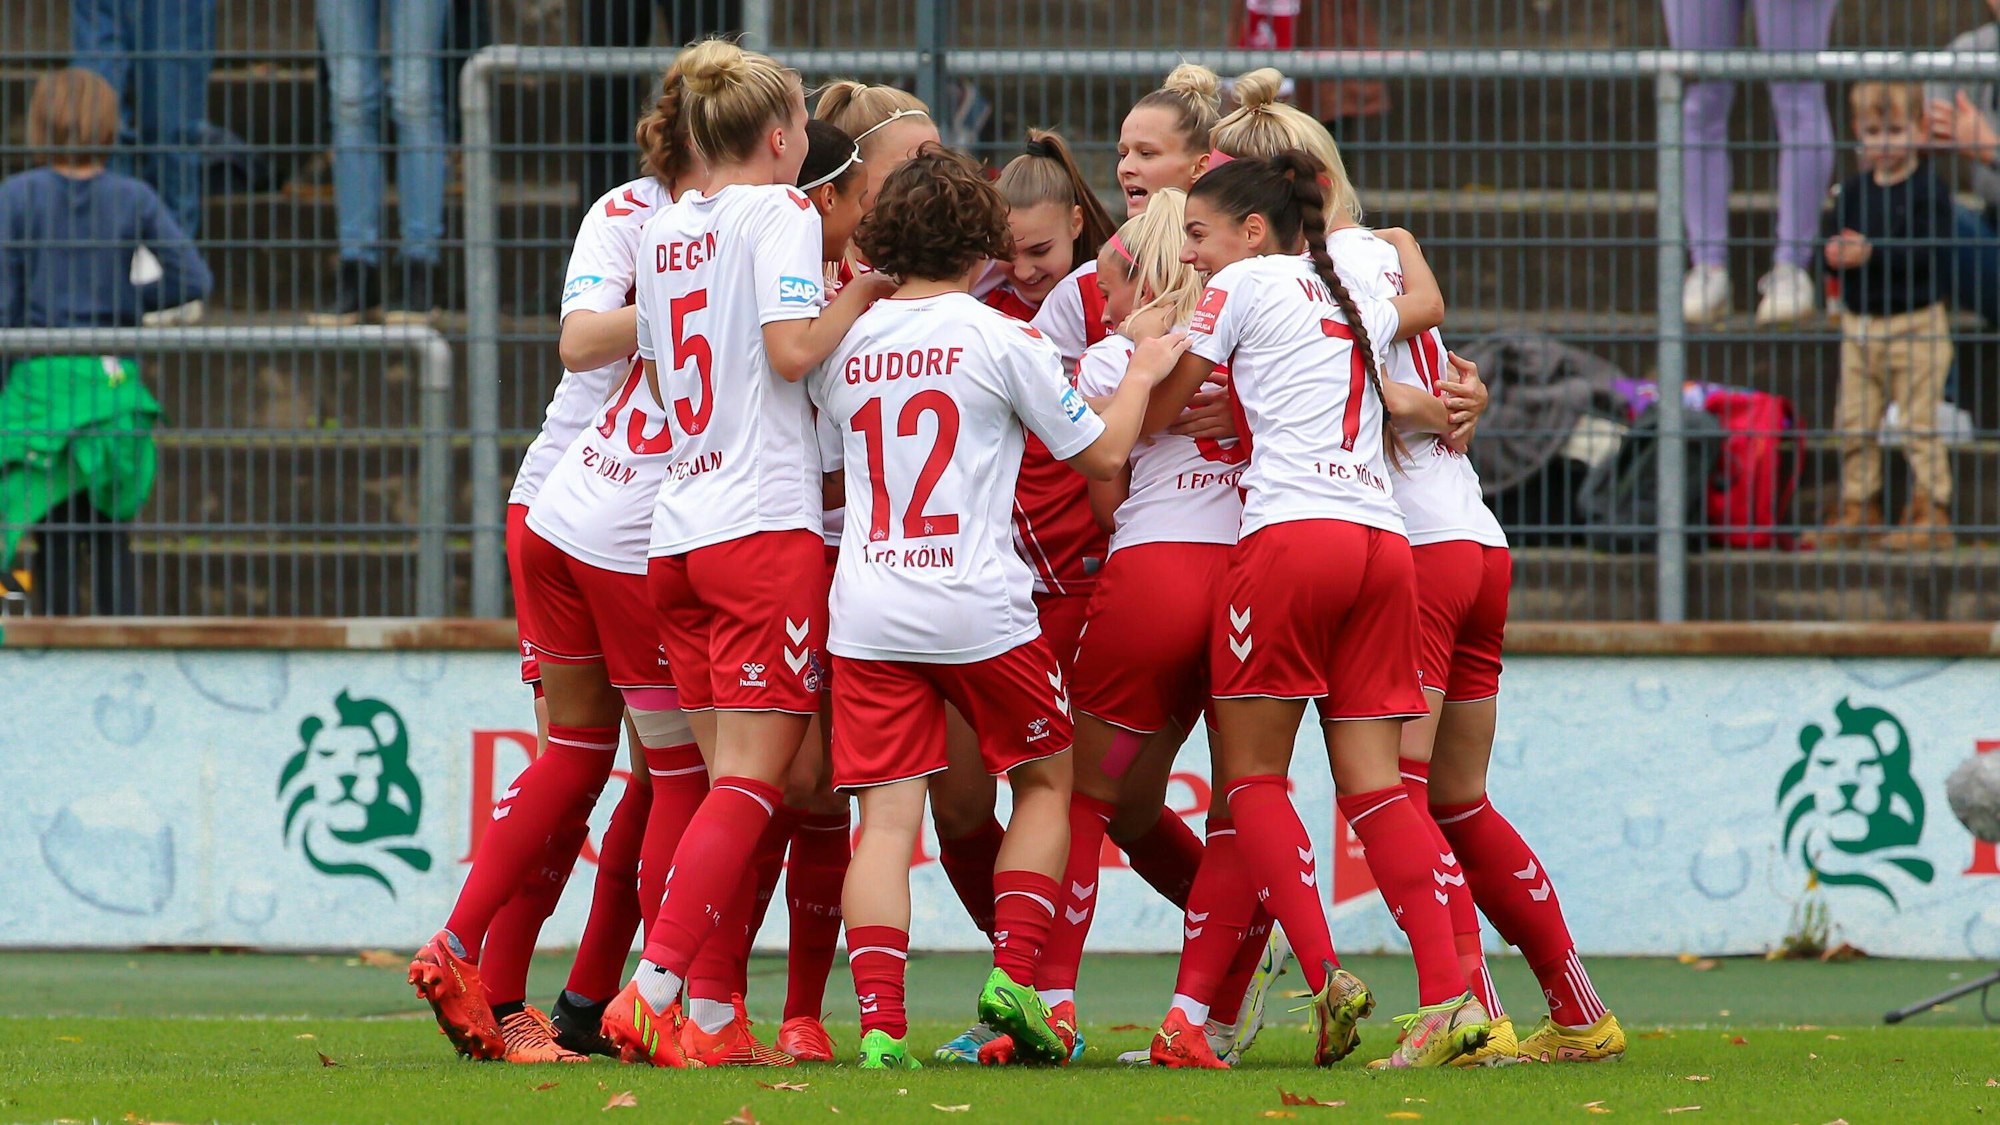 Spielerinnen des 1. FC Köln jubeln zusammen über ein Tor im Spiel gegen den SV Werder Bremen.